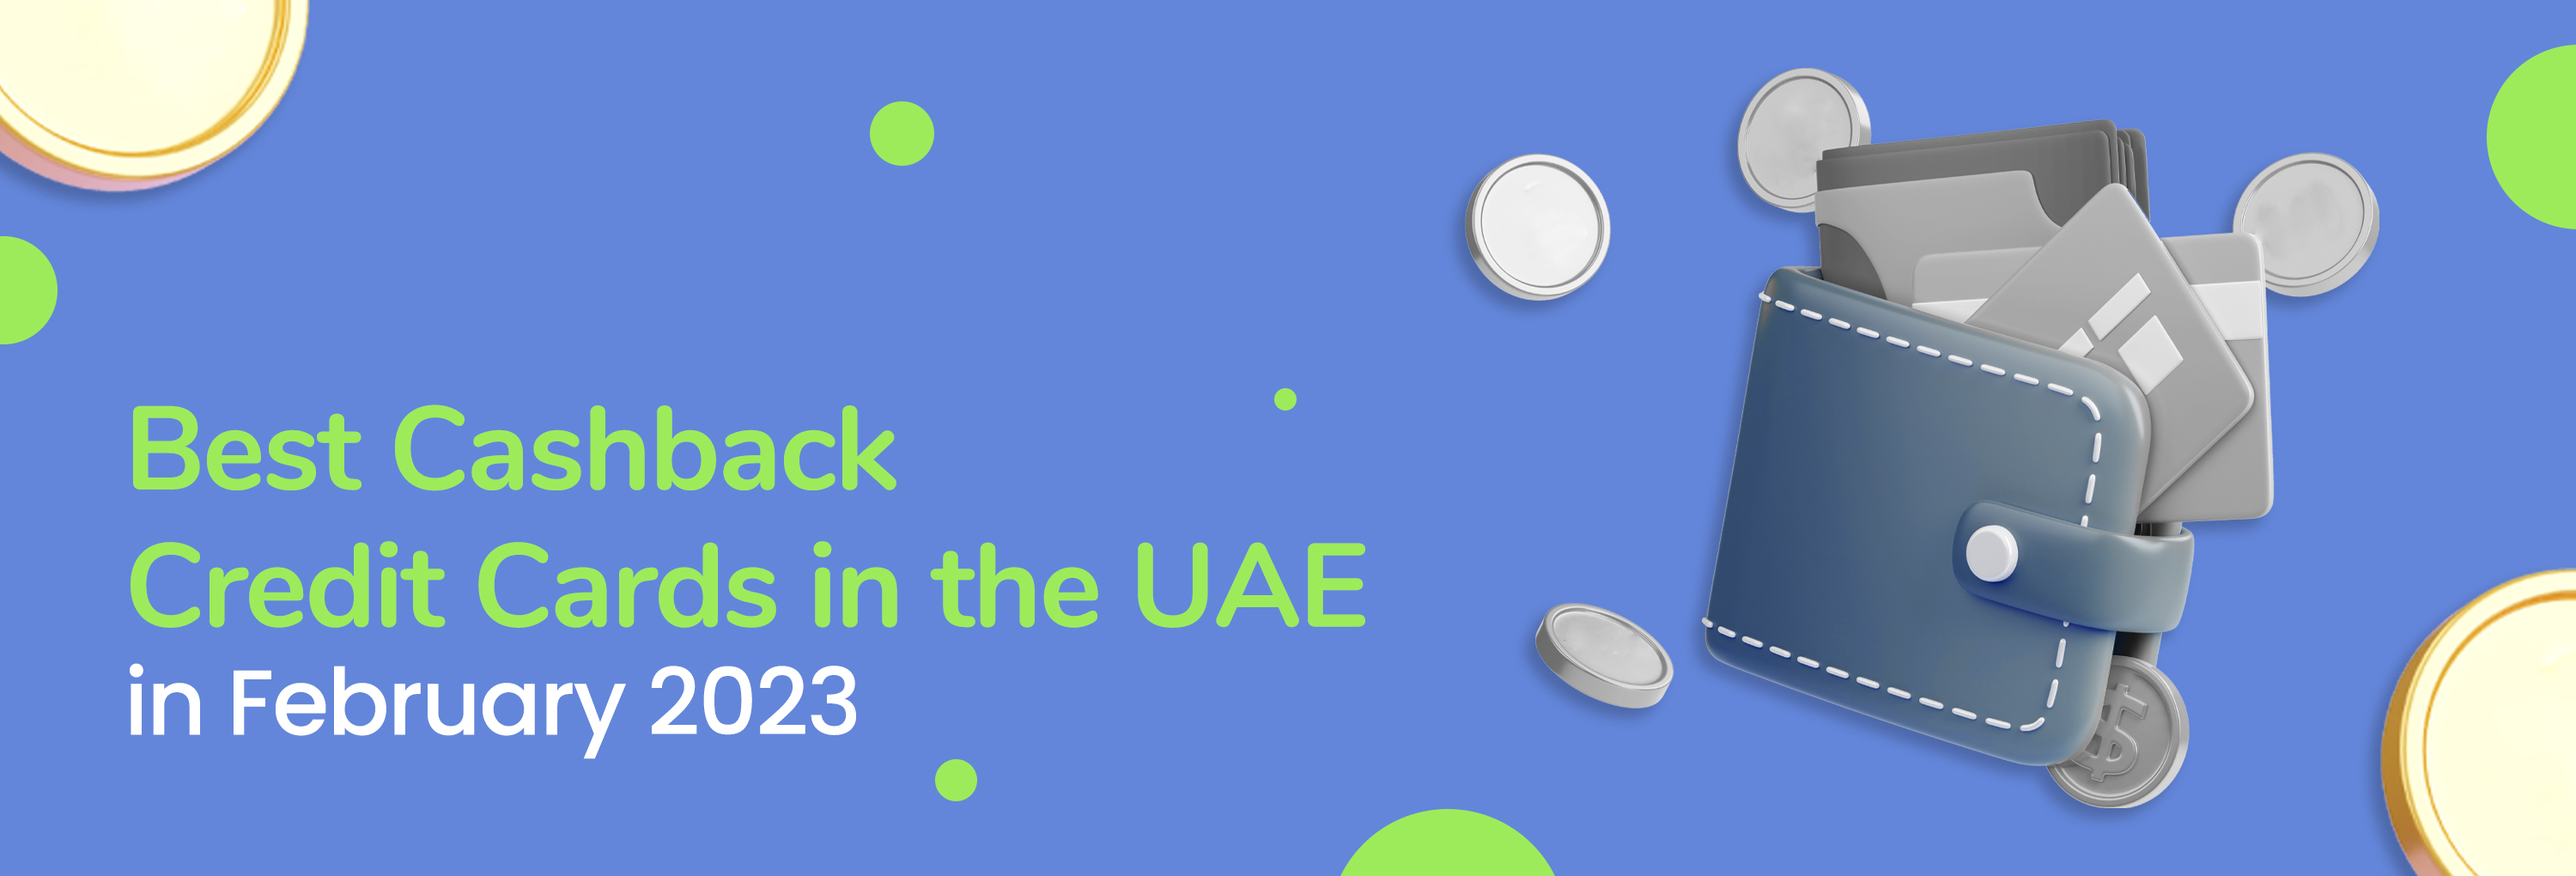 Best Cashback Credit Cards in UAE 2023